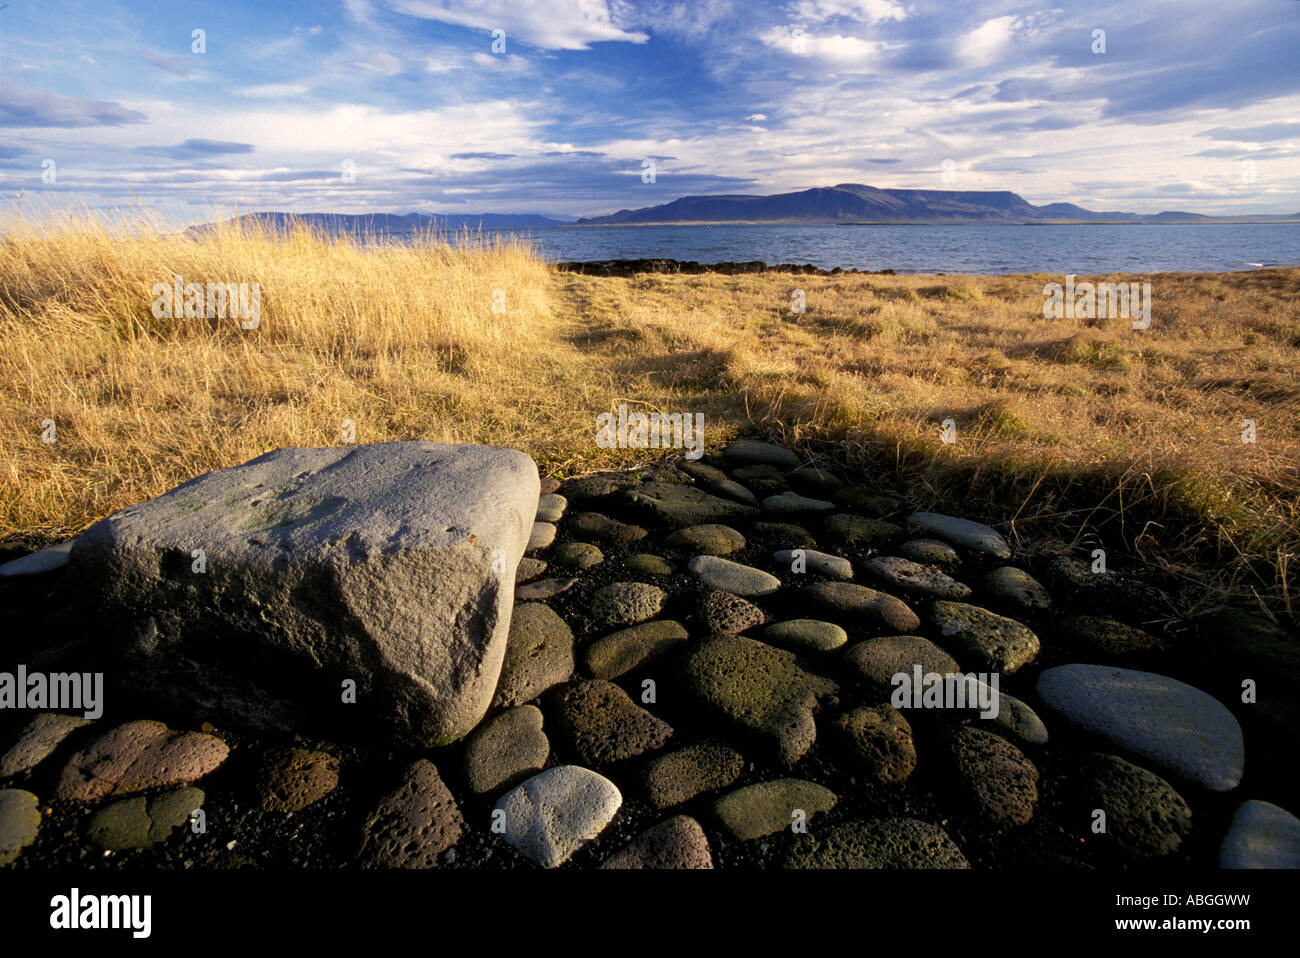 Reykjavík Iceland Stones and grassy field along Faxaflói Bay Stock Photo